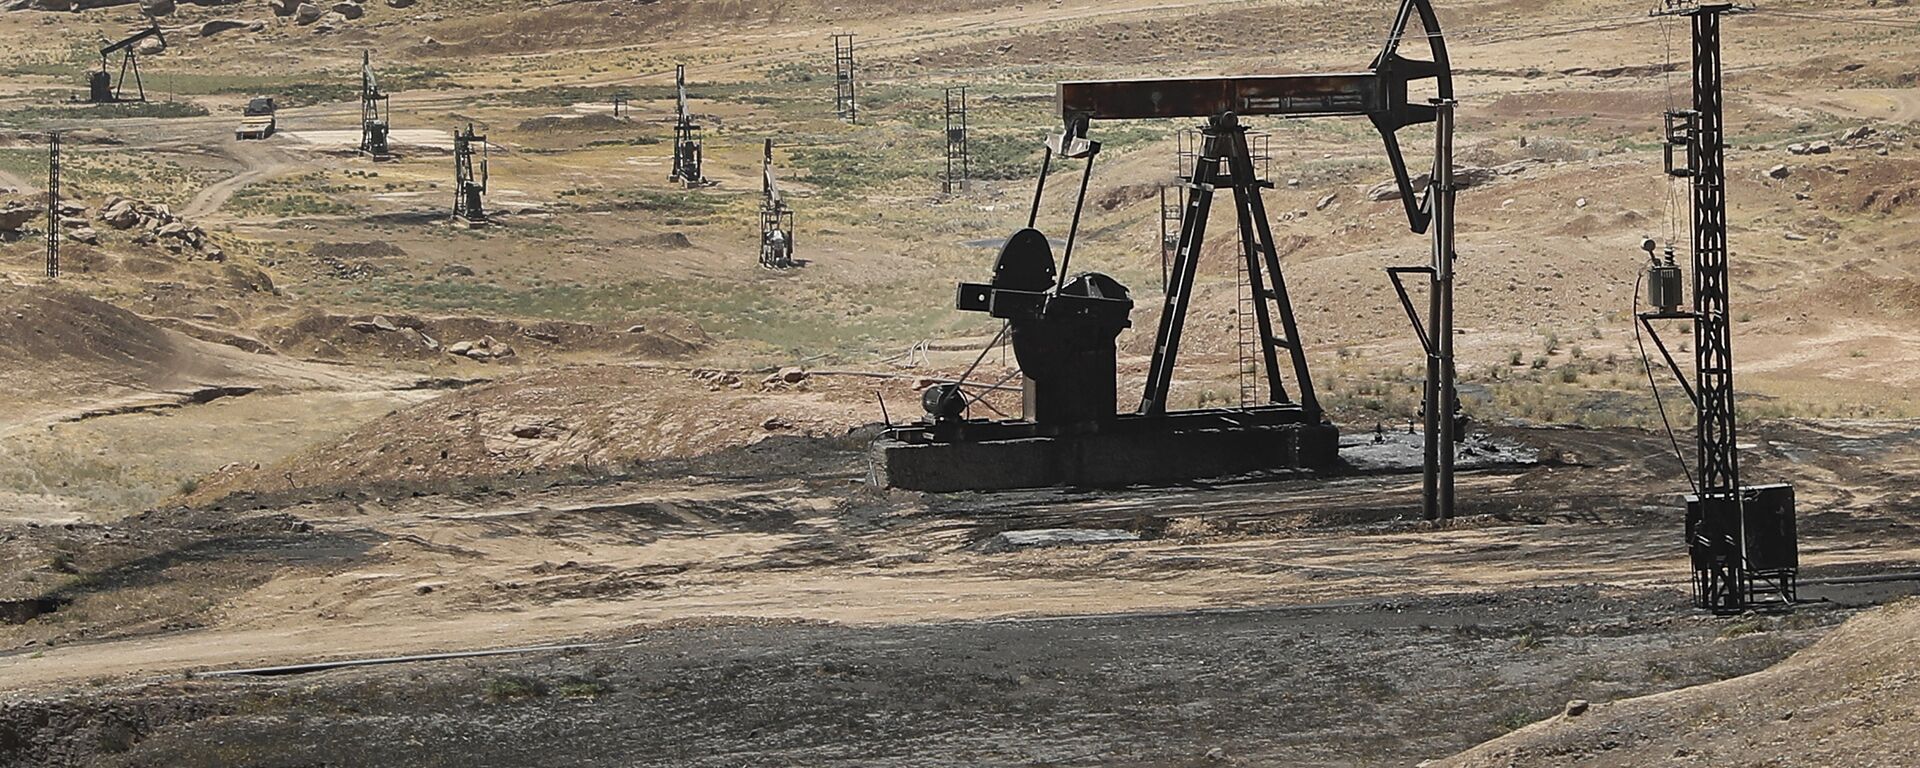 Nafta polja u sirijskoj provinciji Hasaka - Sputnik Srbija, 1920, 20.03.2021